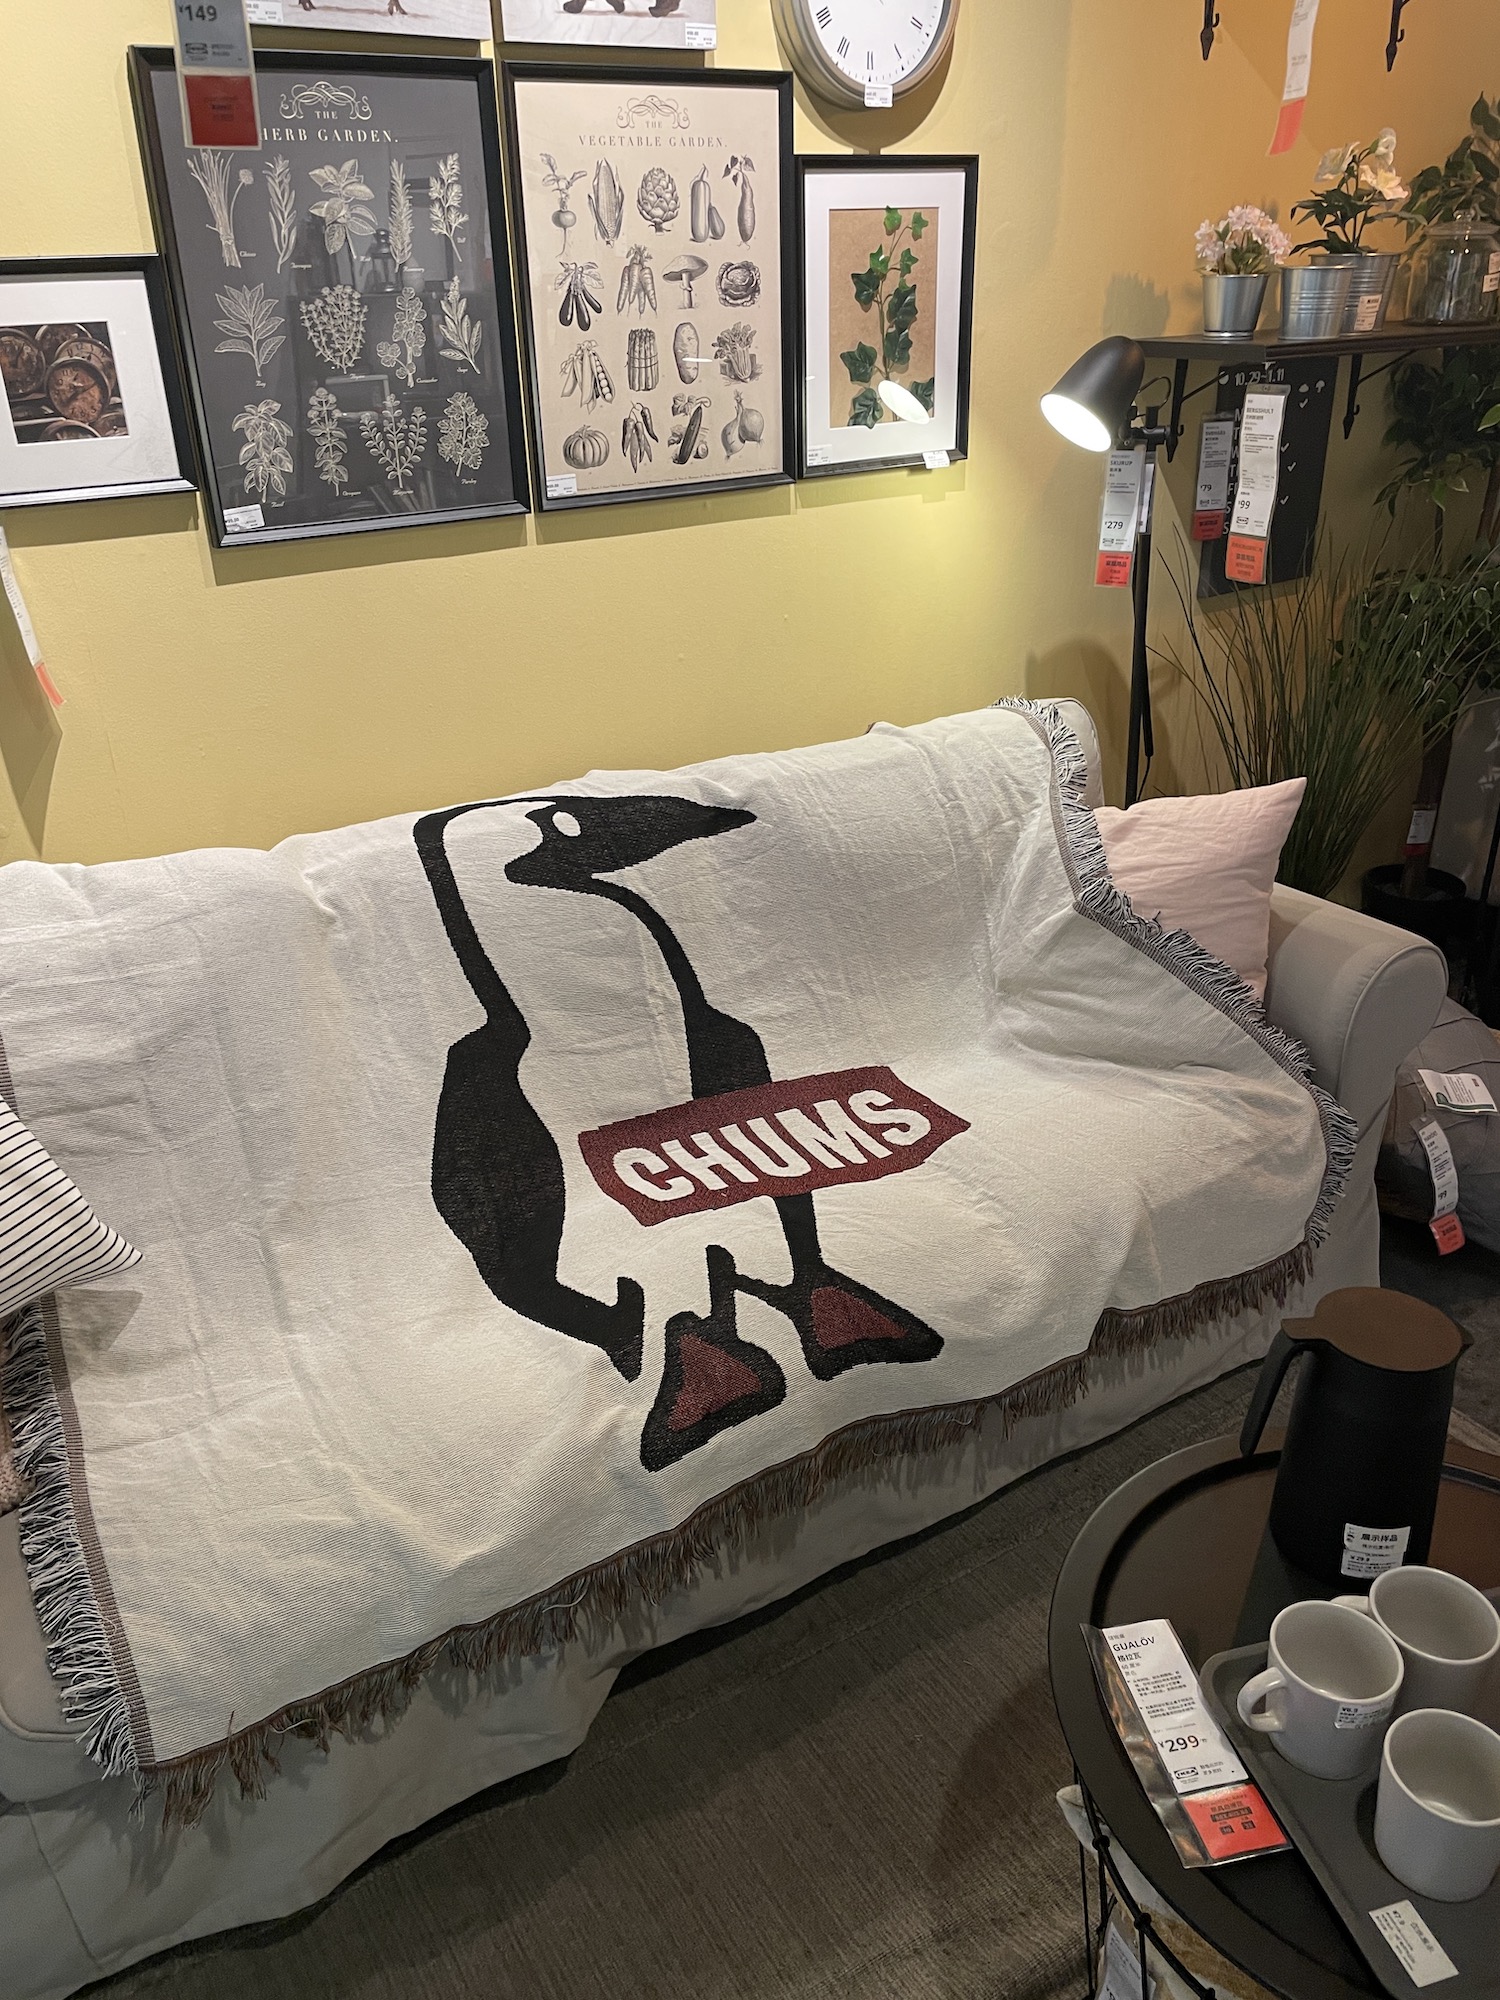 企鹅布置简约个性装饰拍照棉线纺织线毯床头毯盖毯铺沙发垫子毯子 居家布艺 沙发垫 原图主图